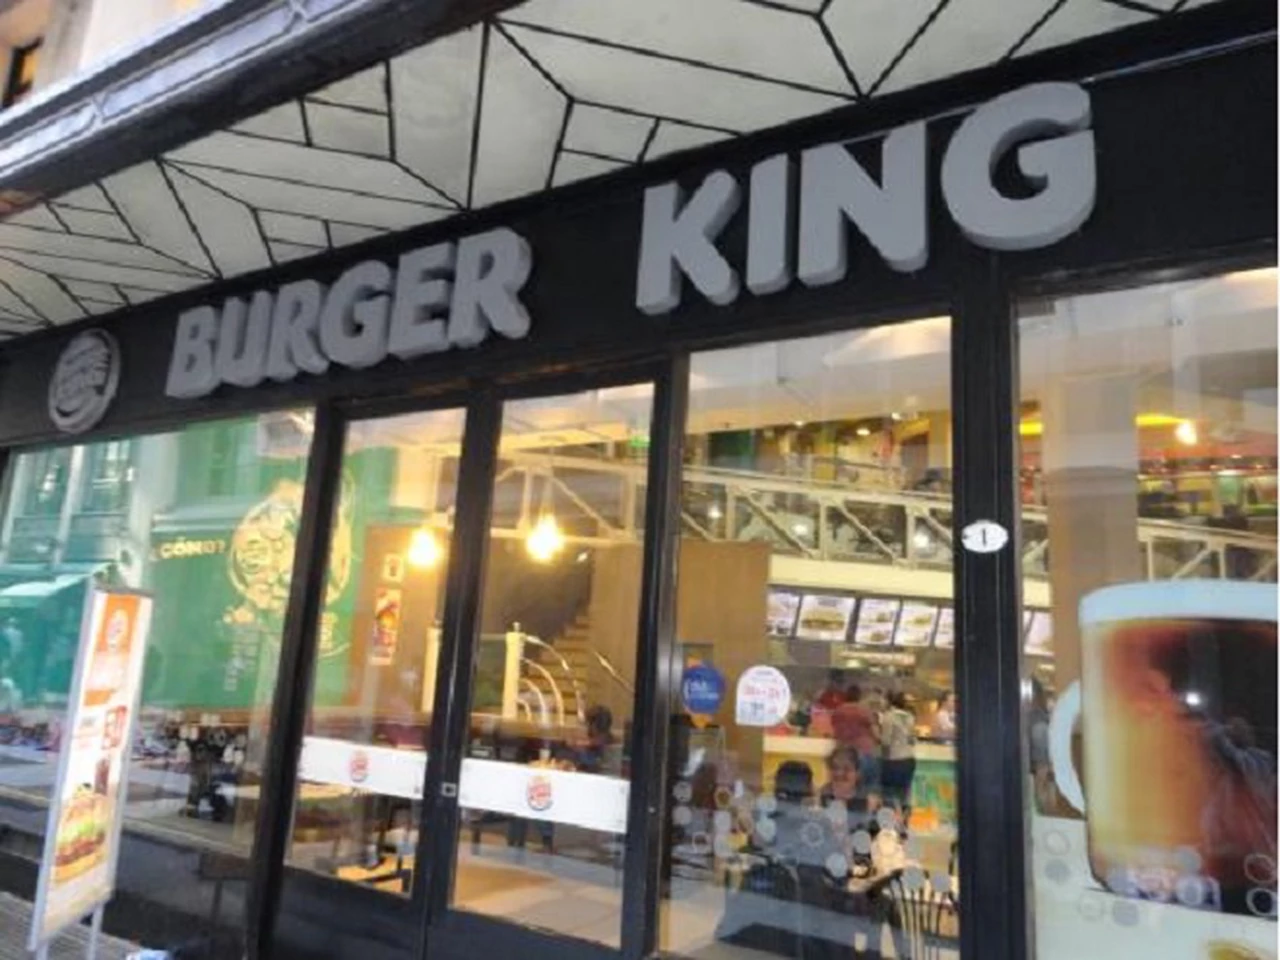 Escandaloso mensaje de Burger King: "Las mujeres pertenecen a la cocina", ¿qué pasó?